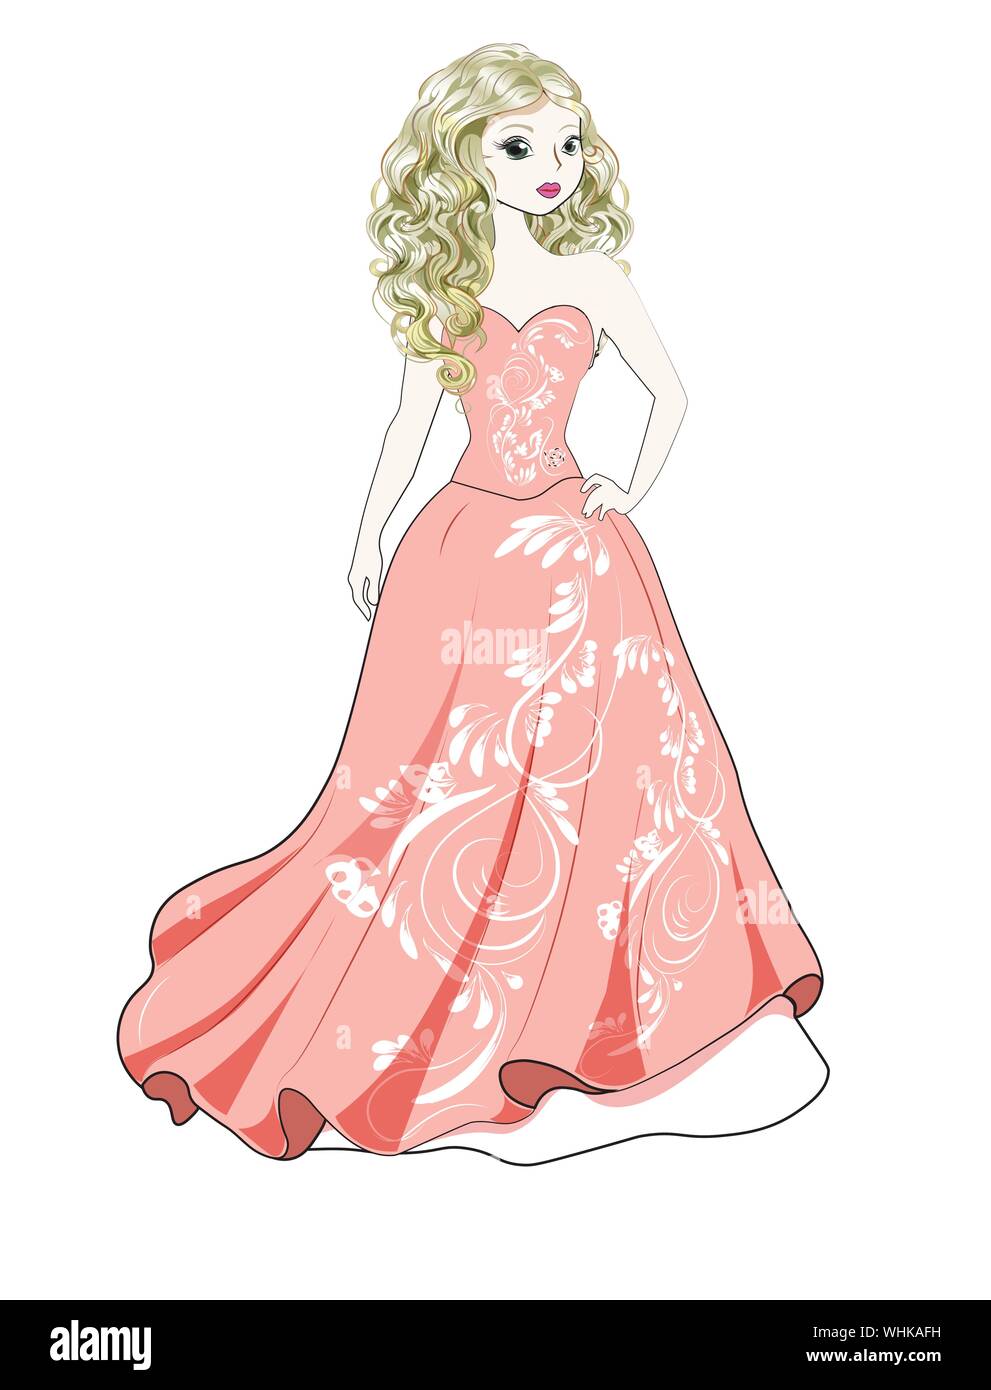 Schöne junge Prinzessin in einer herrlichen rosa Kleid Stock Vektor